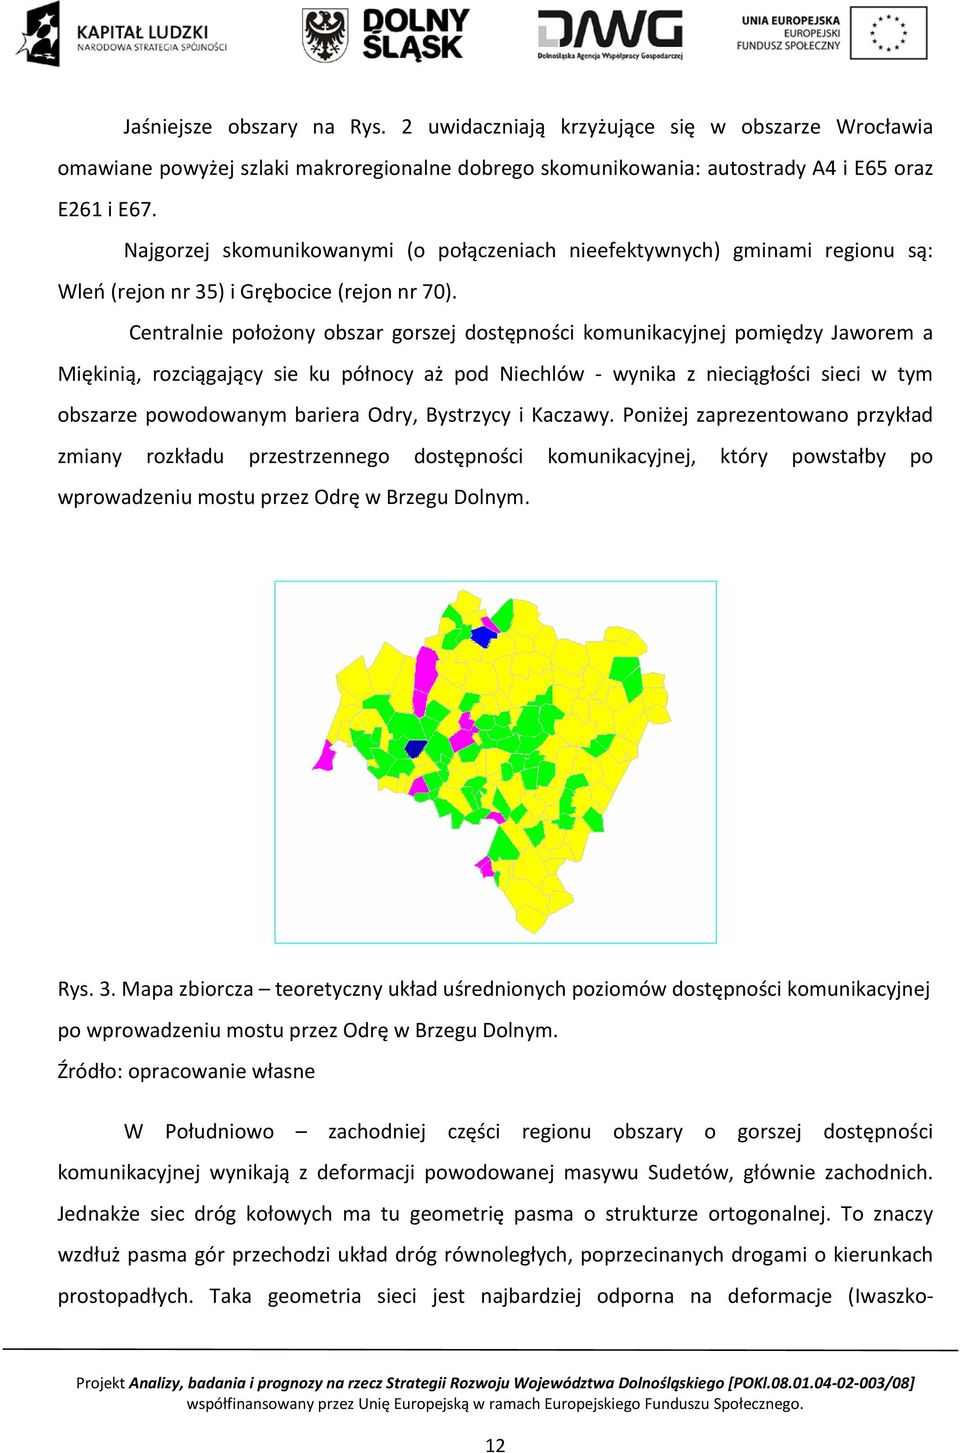 Centralnie położony obszar gorszej dostępności komunikacyjnej pomiędzy Jaworem a Miękinią, rozciągający sie ku północy aż pod Niechlów - wynika z nieciągłości sieci w tym obszarze powodowanym bariera